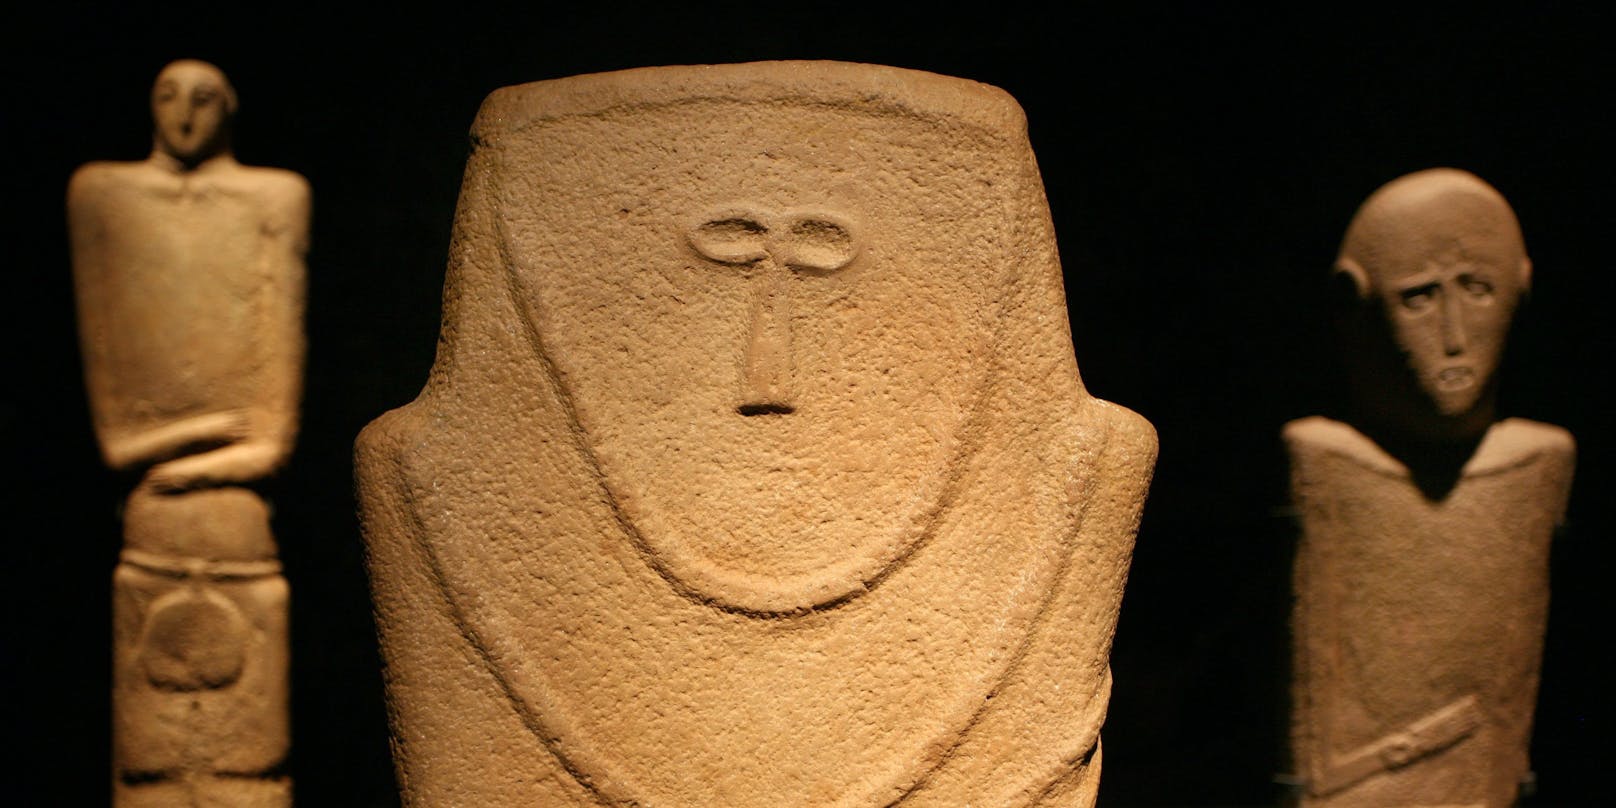 Ein oder mehrere Unbekannte bespritzten mindestens 70 Objekte im Pergamonmuseum (Bild), im Neuen Museum, in der Alten Nationalgalerie mit einer öligen Flüssigkeit.